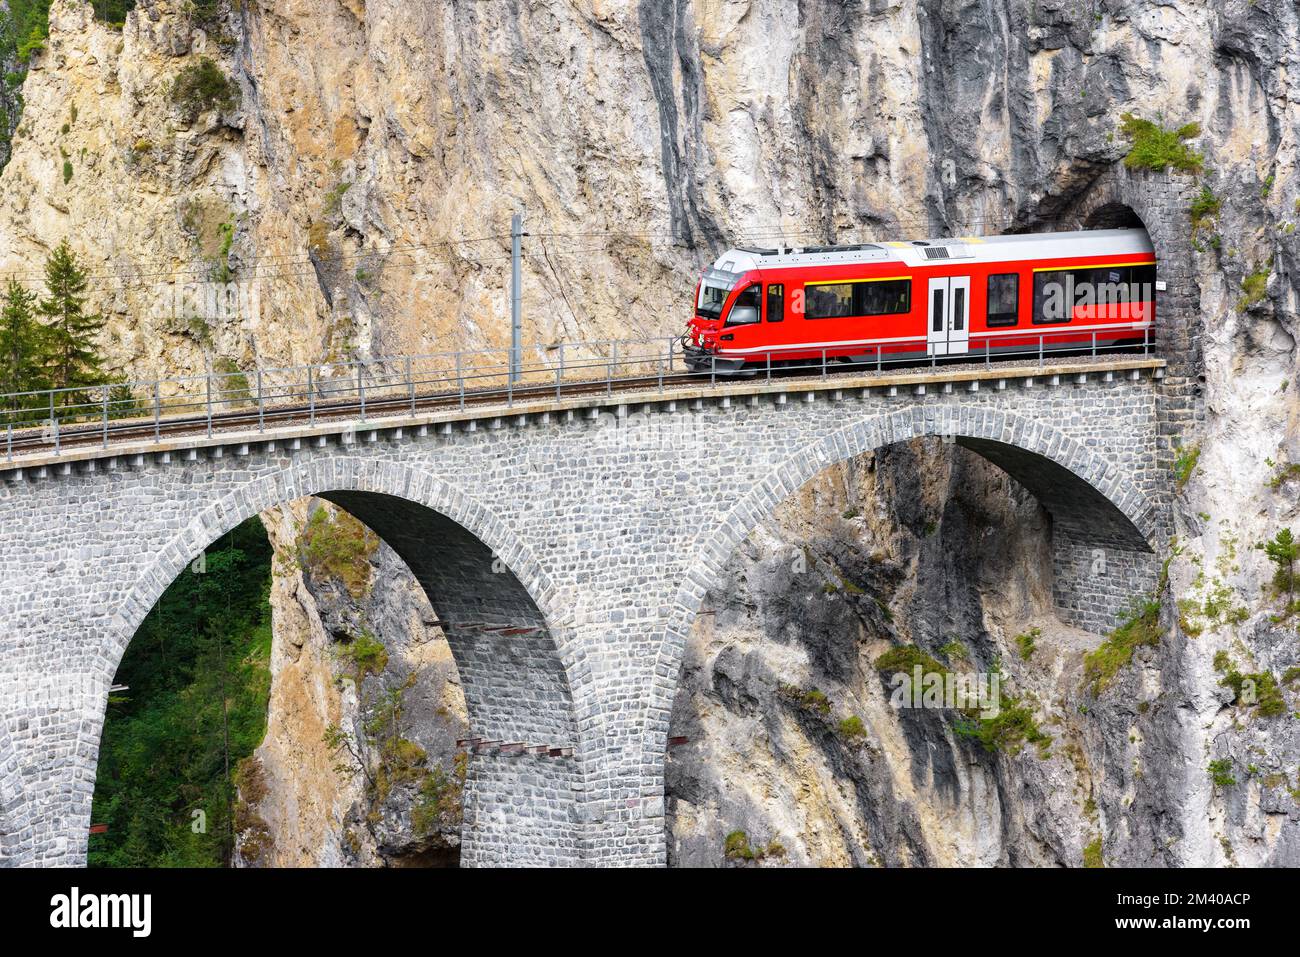 BERNINA Express Gletscherzug auf Landwasser Viadukt, Filisur, Schweiz. Blick auf die hohe Eisenbahnbrücke und den Tunnel im Fels der Schweizer Alpen. mou-Thema Stockfoto